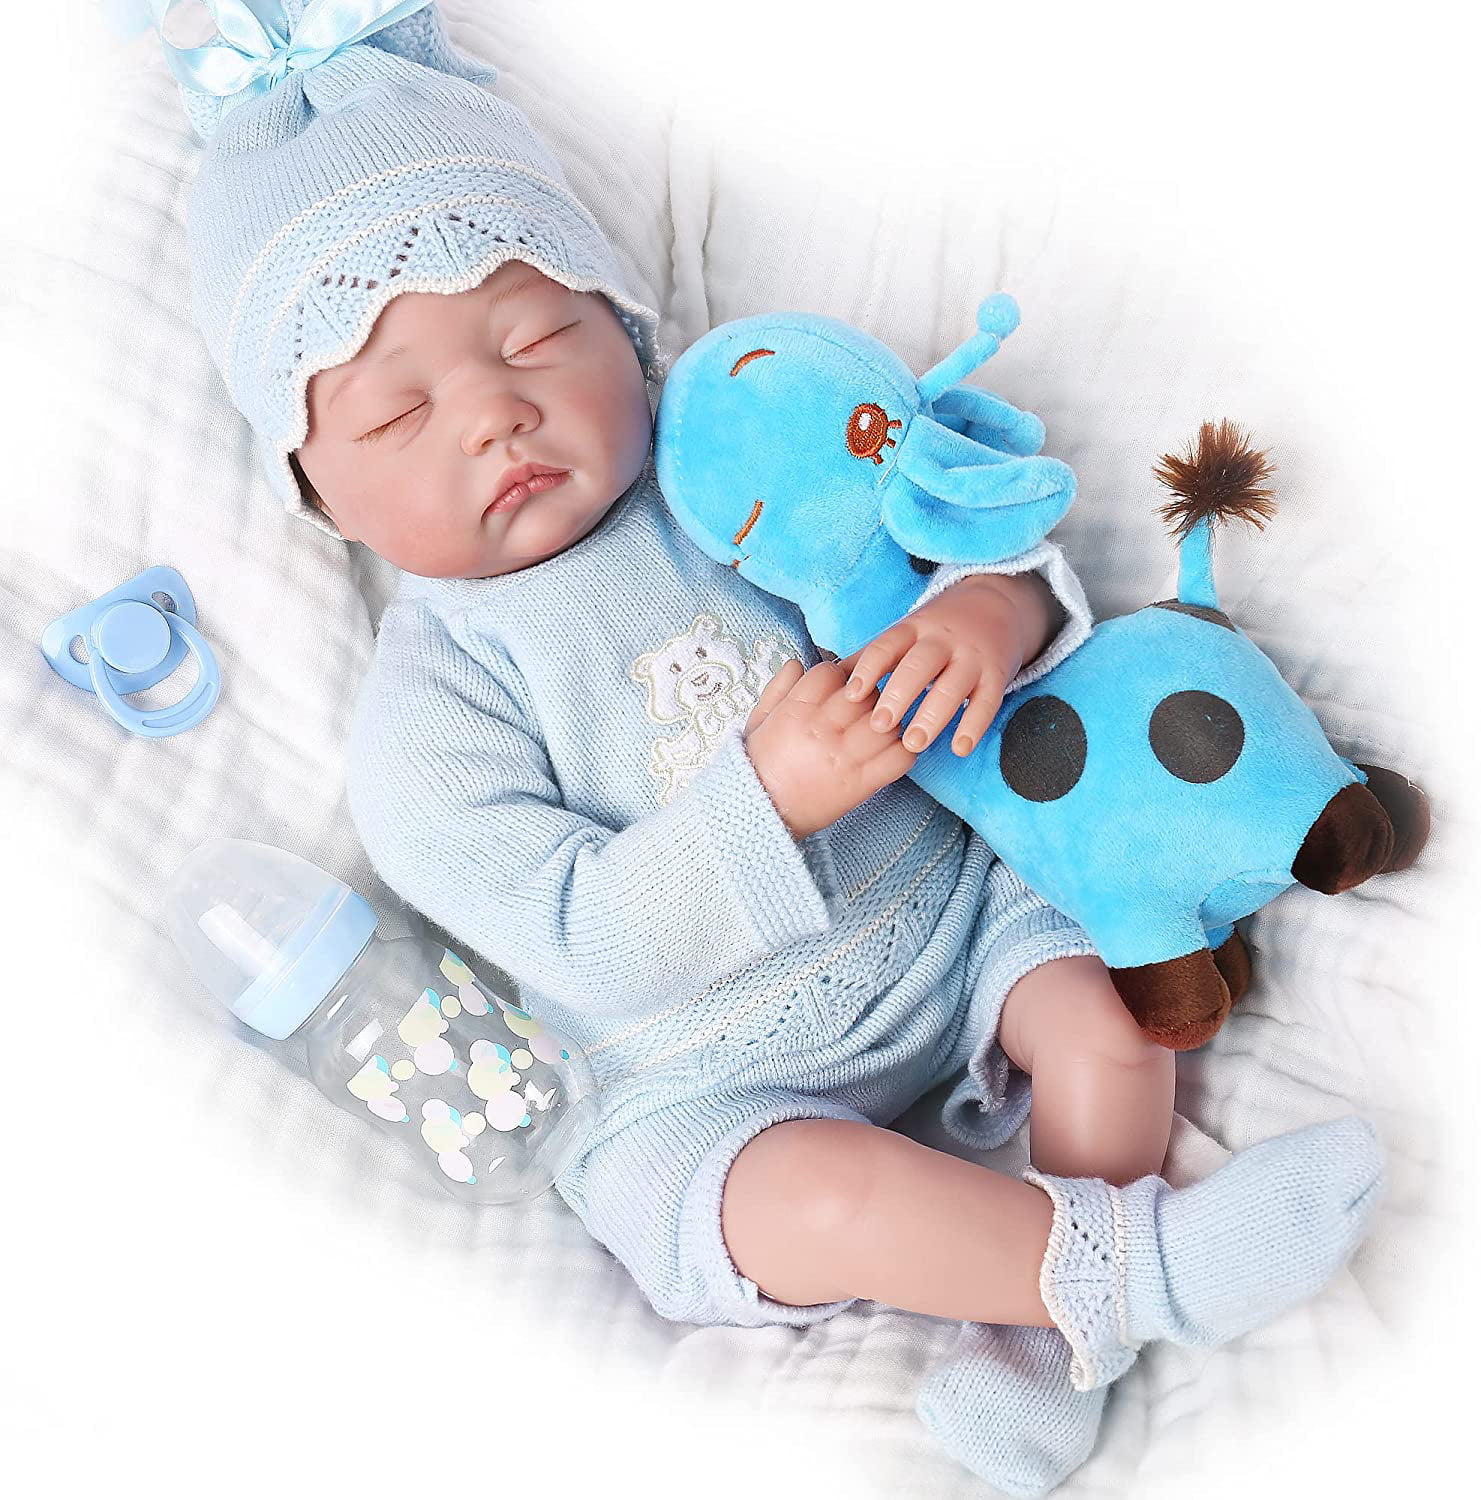 22'' Full Body Silicone Reborn Baby Realistic Sleeping Boy Newborn Doll Toy Gift 